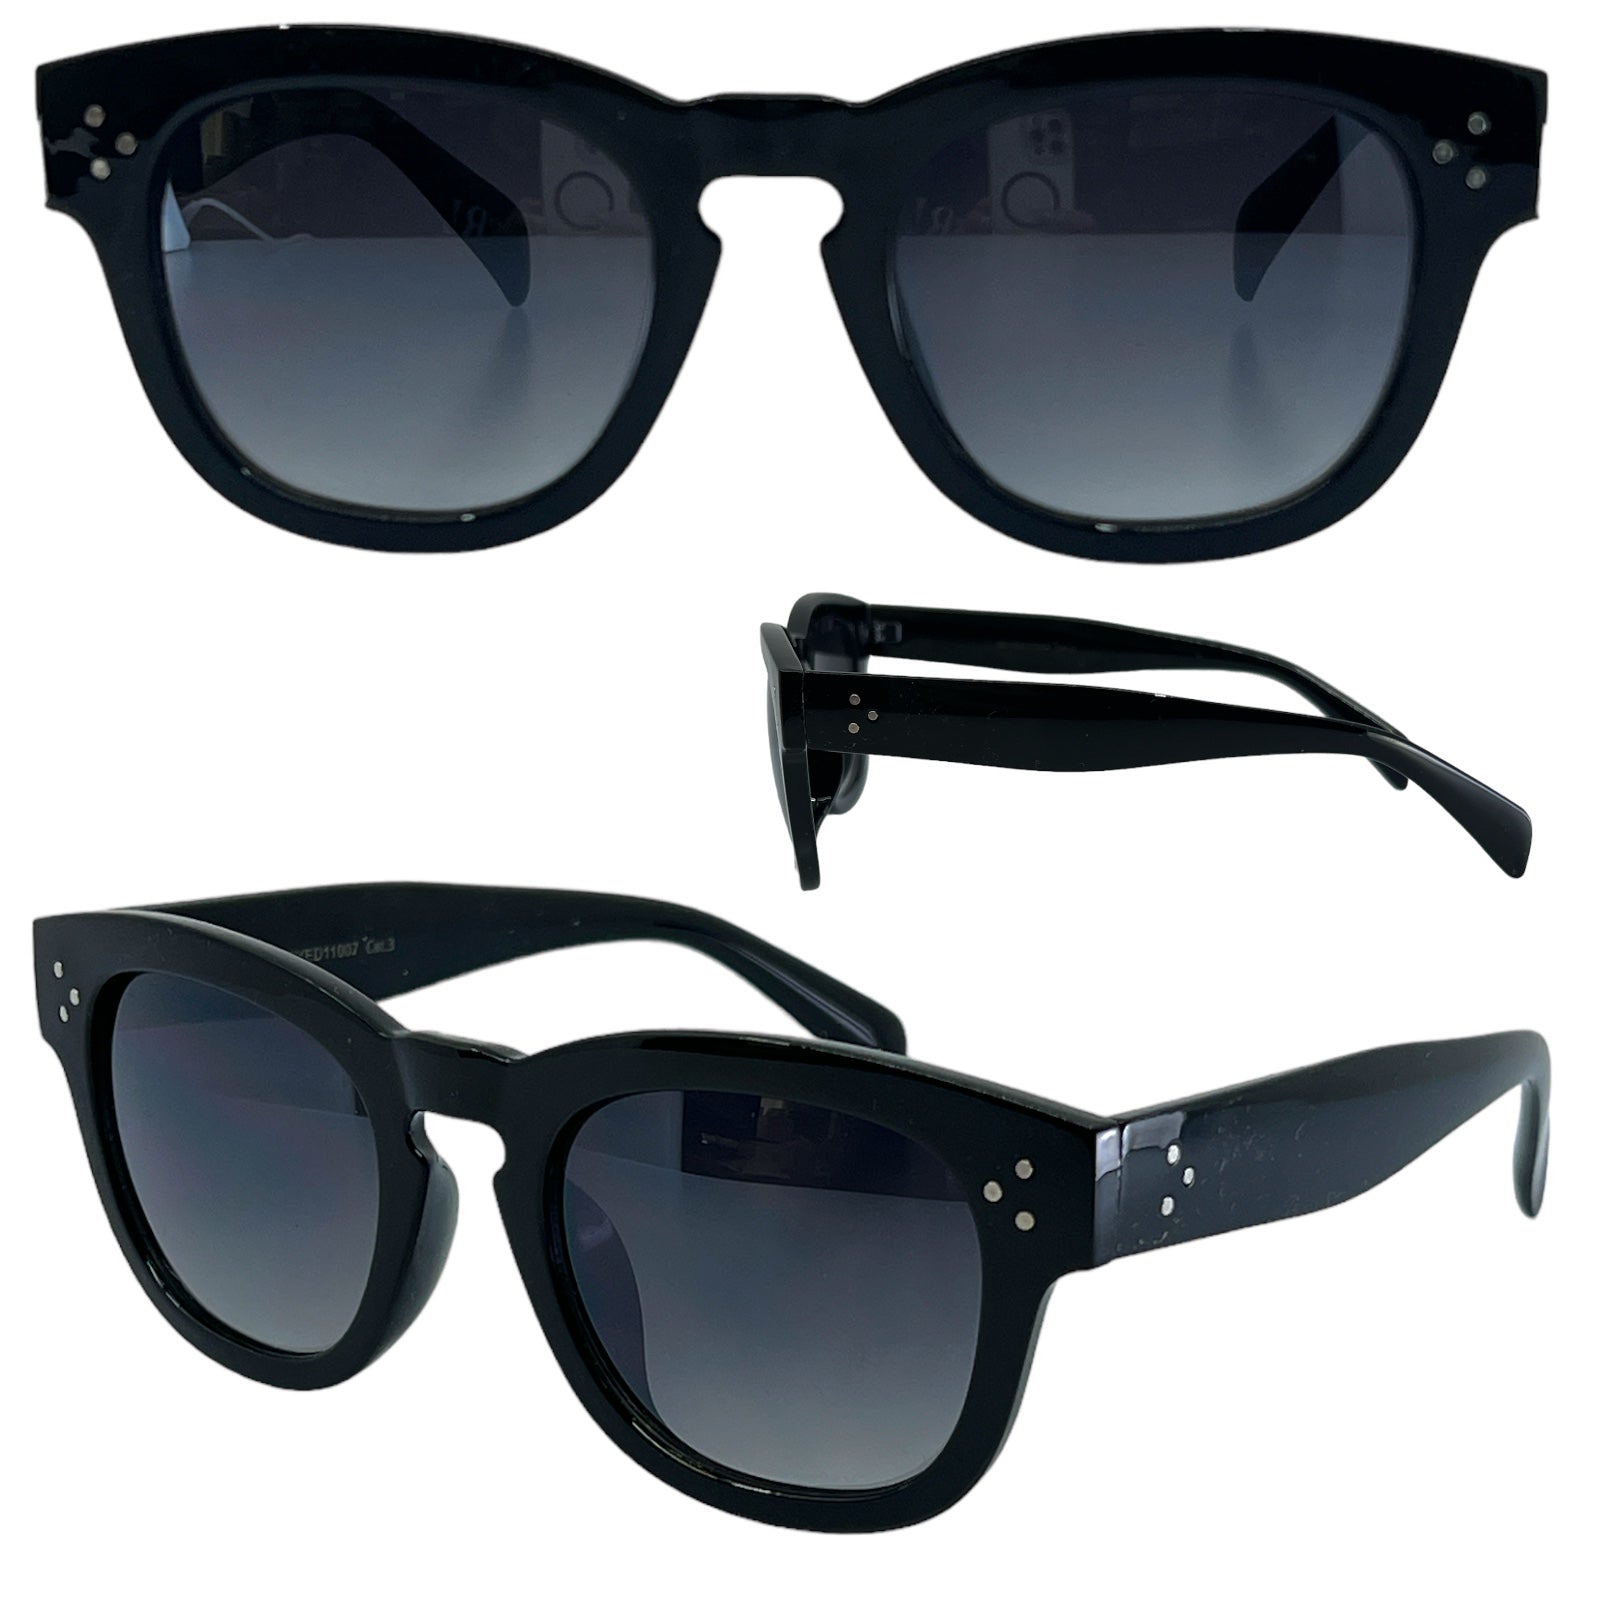 Unisex Designer Black Classic Sunglasses with Key hole Nose Eyedentification 8EYED11007-EYEDENTIFACTIONWAYFARERSBLACKWITHKEYHOLENOSE_1